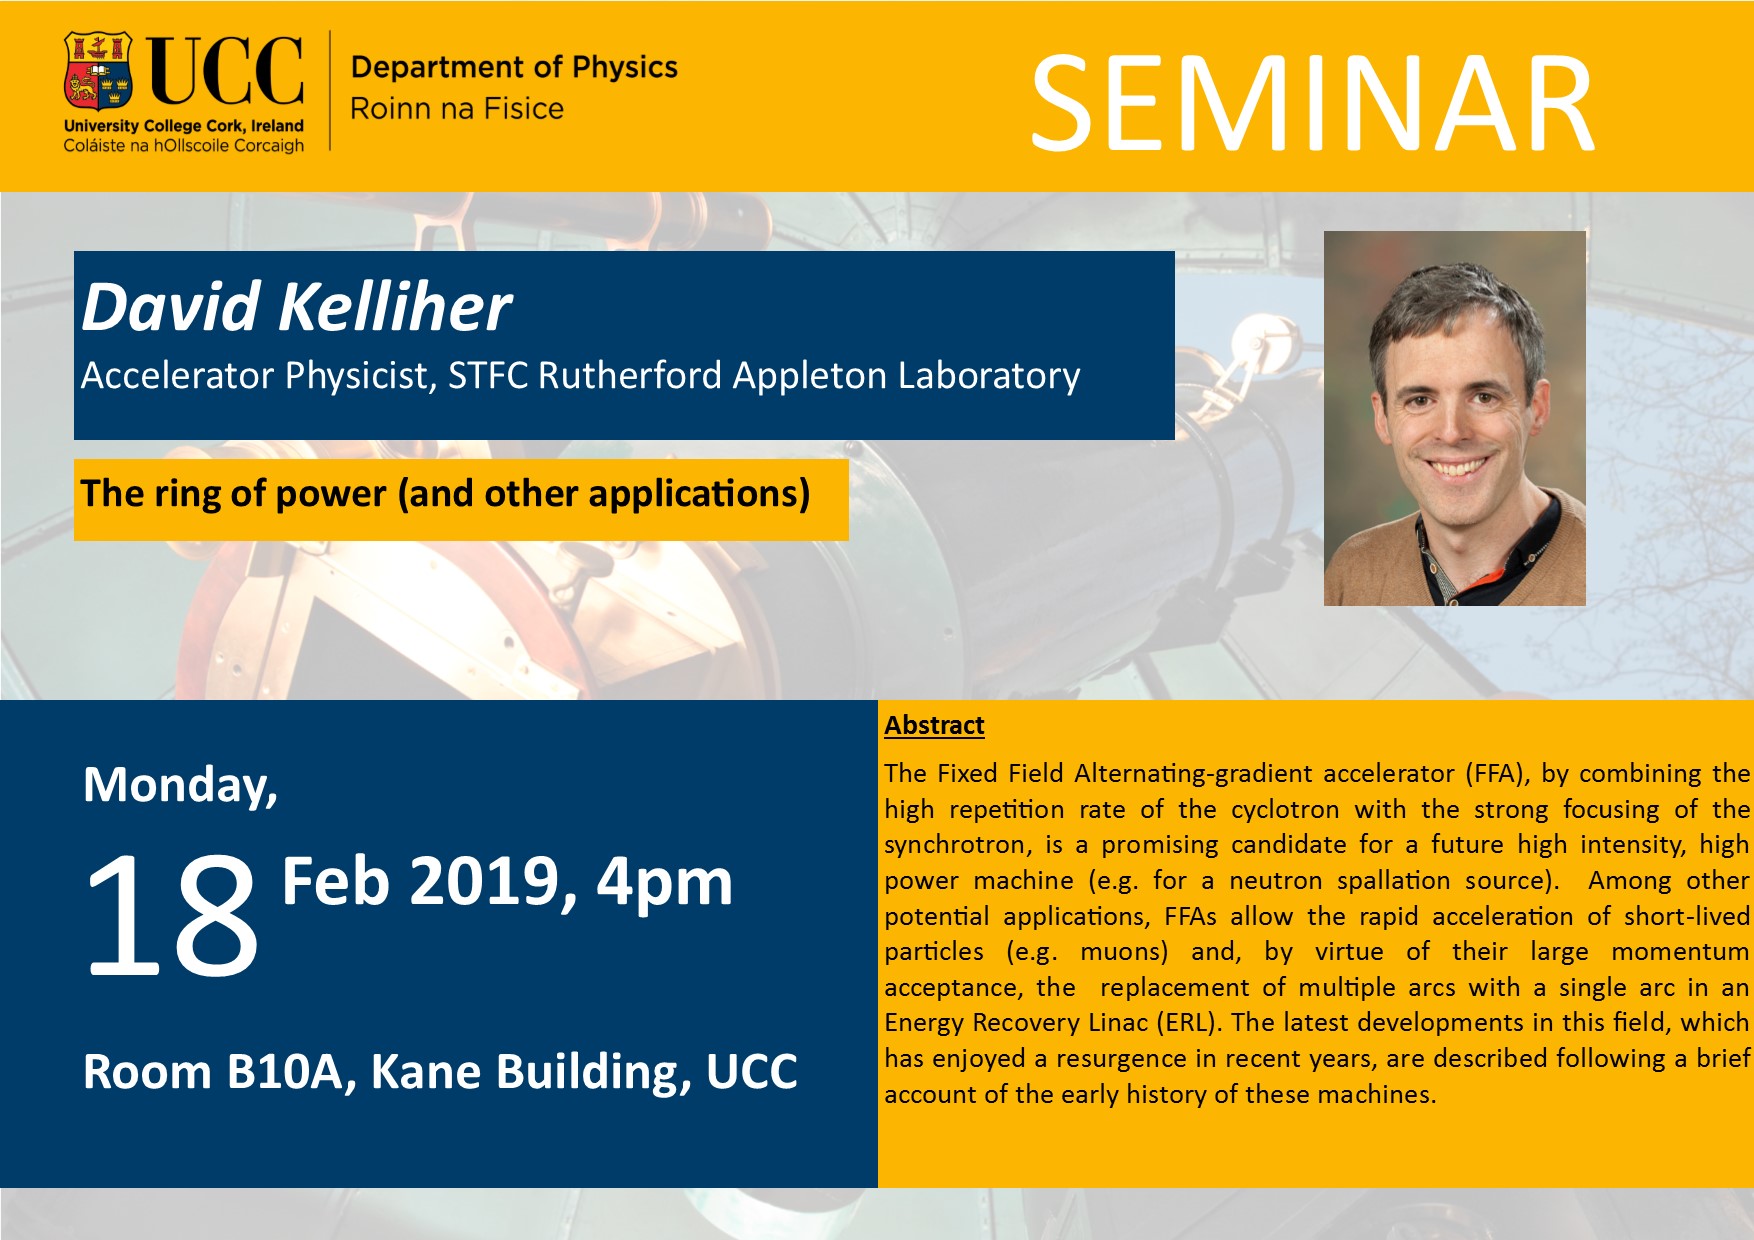 18 Feb 2019 David Kelliher Seminar Poster